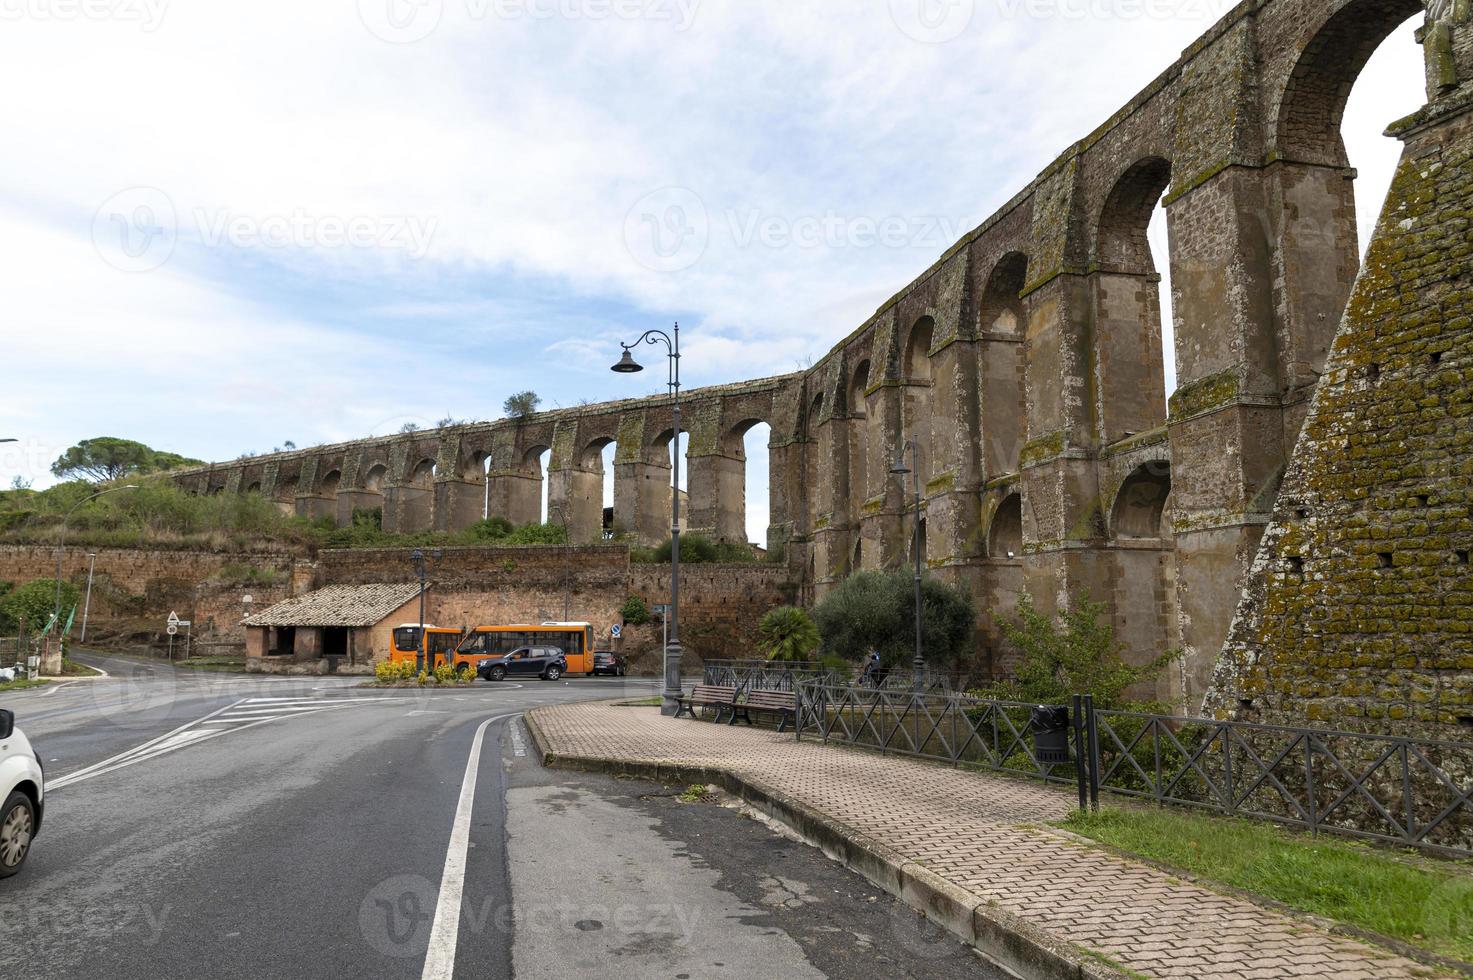 Römisches Aquädukt, die Bottata in der Stadt Nepi, Italien, 2020 foto